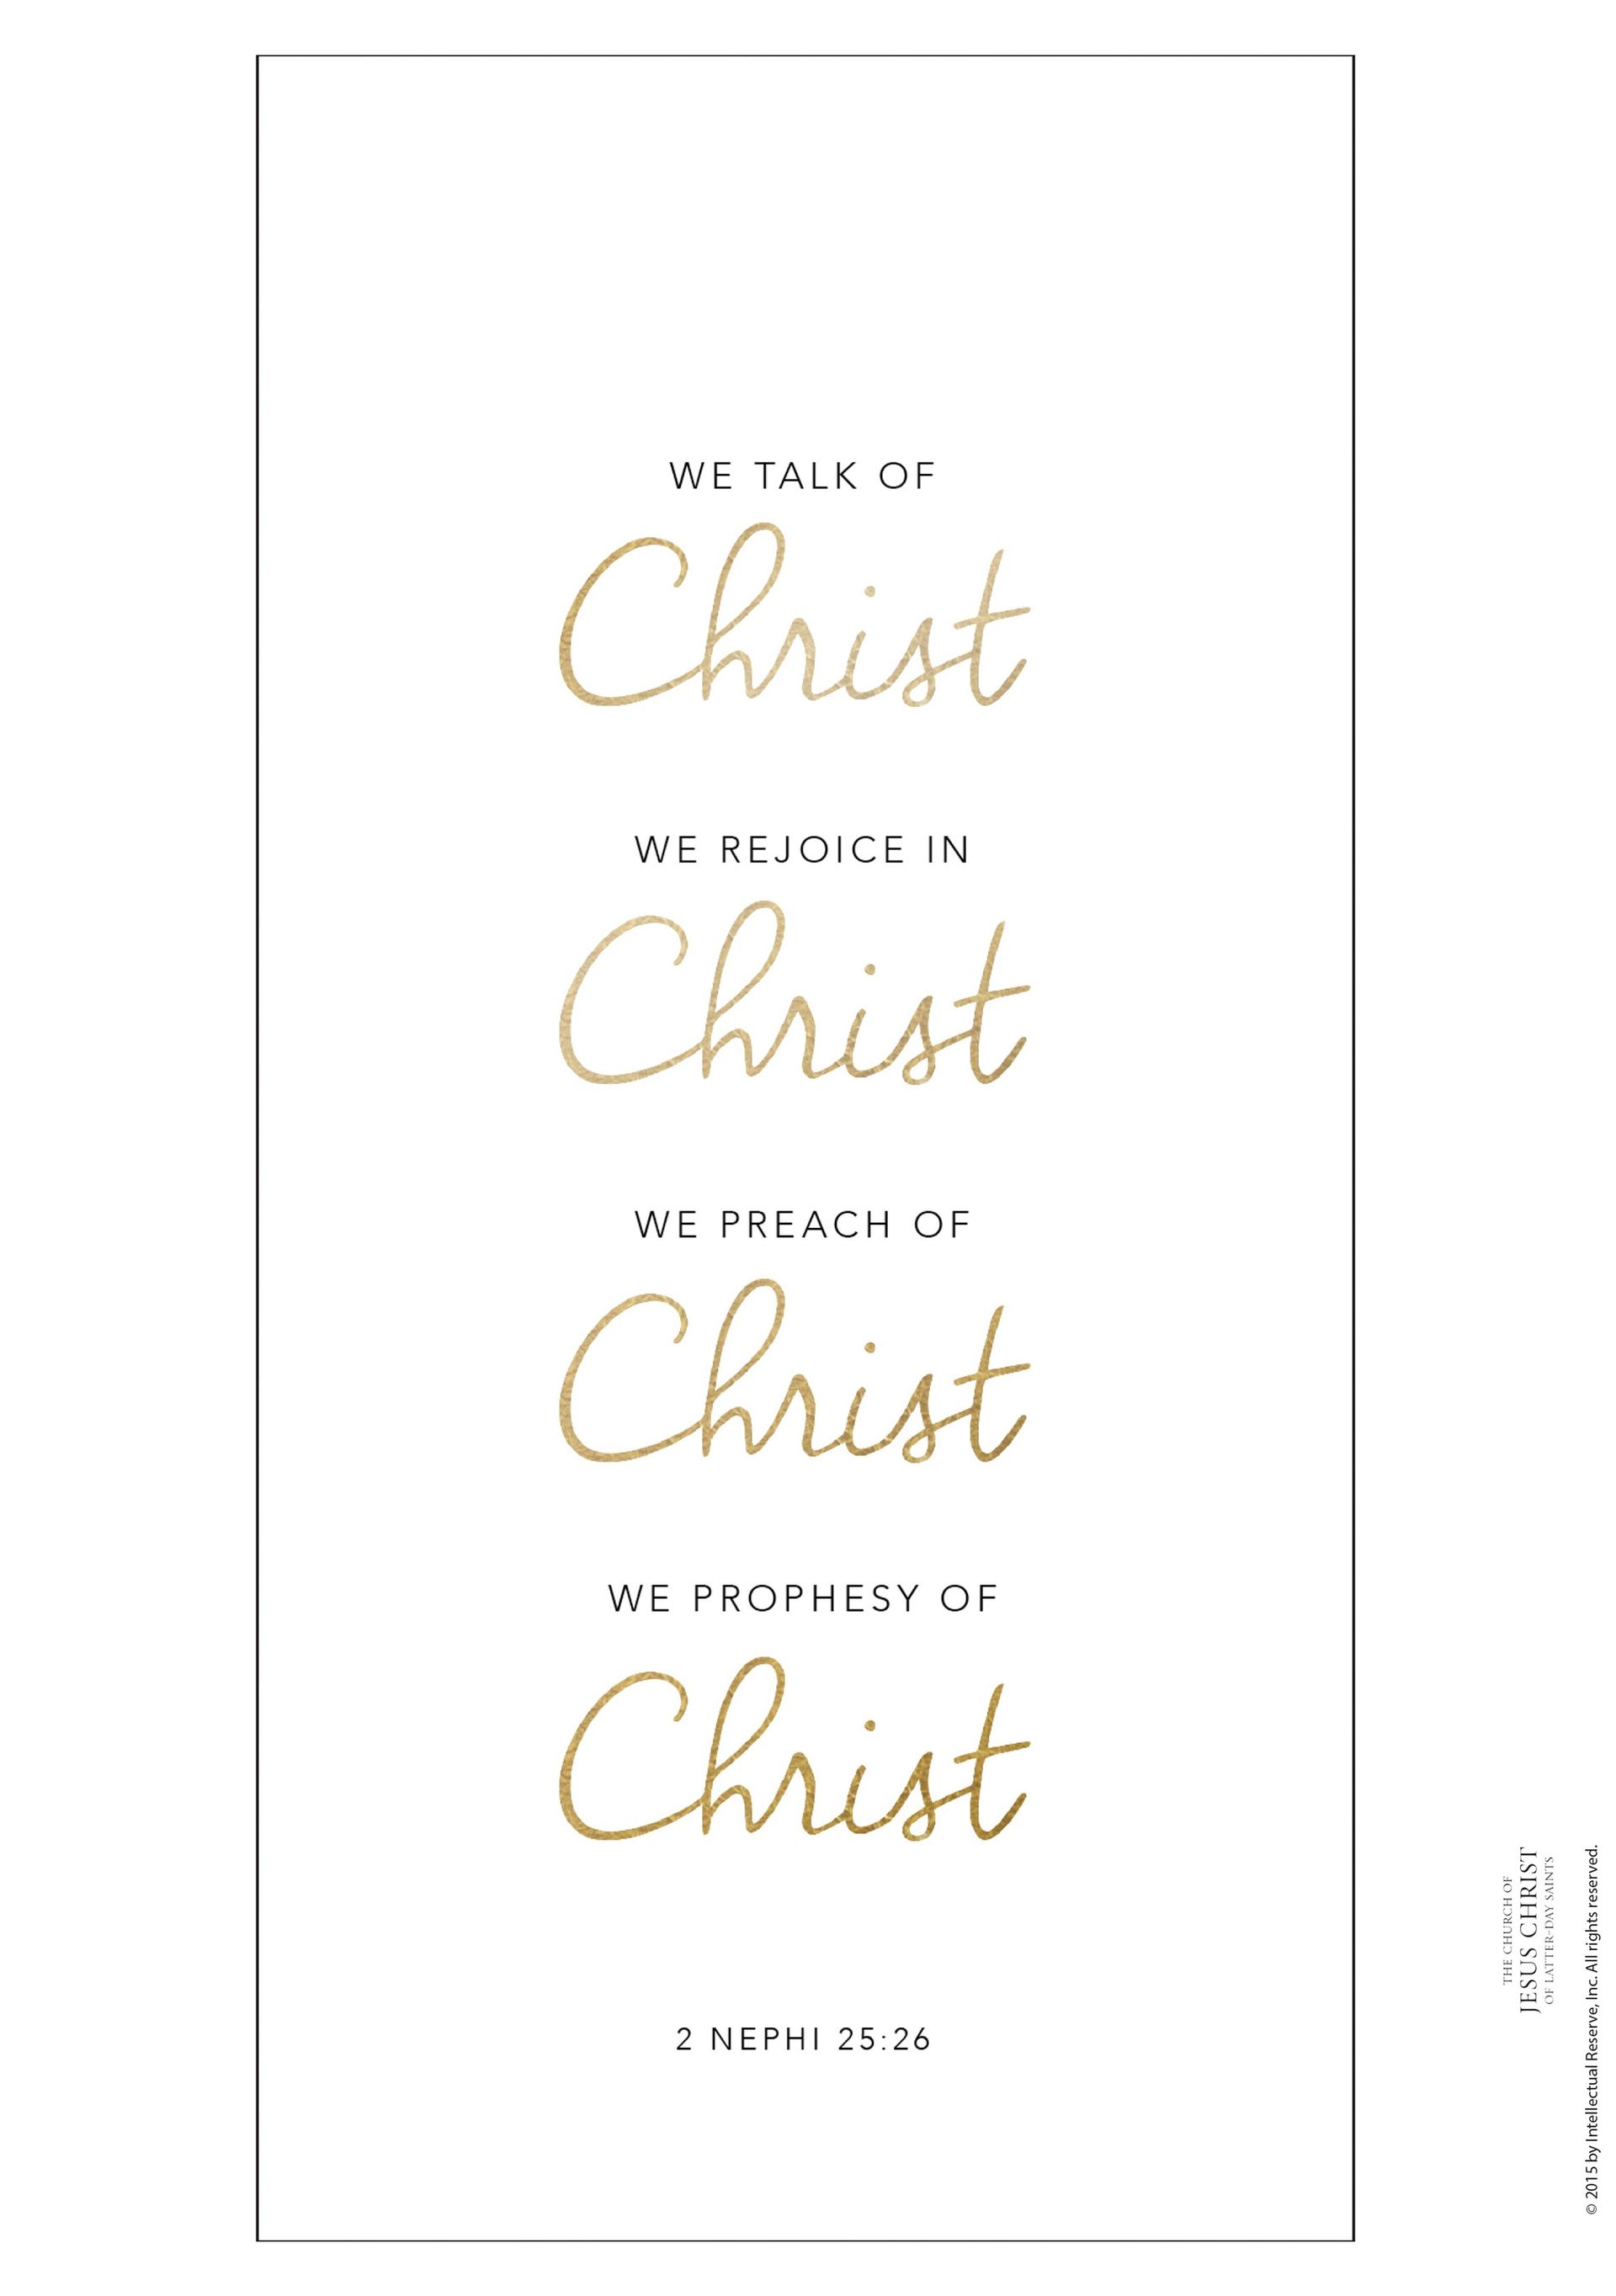 “We talk of Christ, we rejoice in Christ, we preach of Christ, we prophesy of Christ.” —2 Nephi 25:26